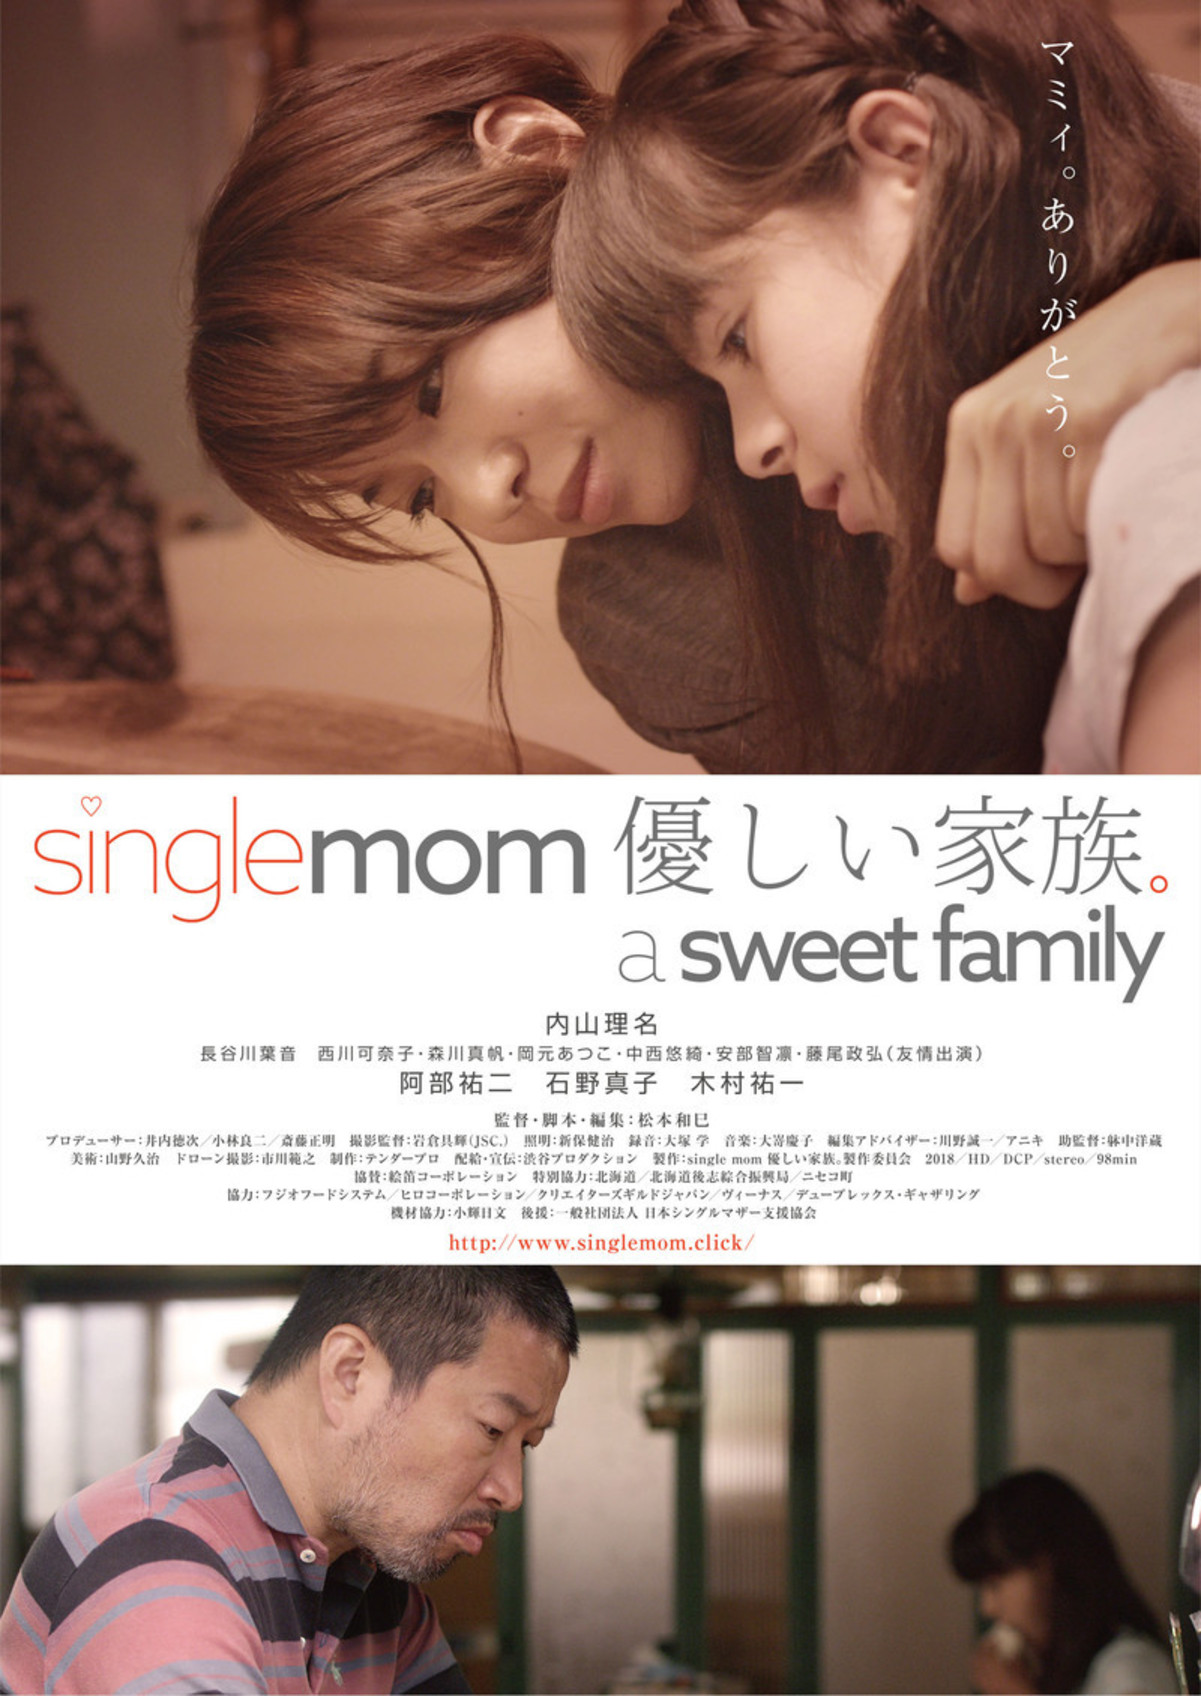 内山理名がシングルマザーに Single Mom 優しい家族 特報 映画ニュース 映画 Com